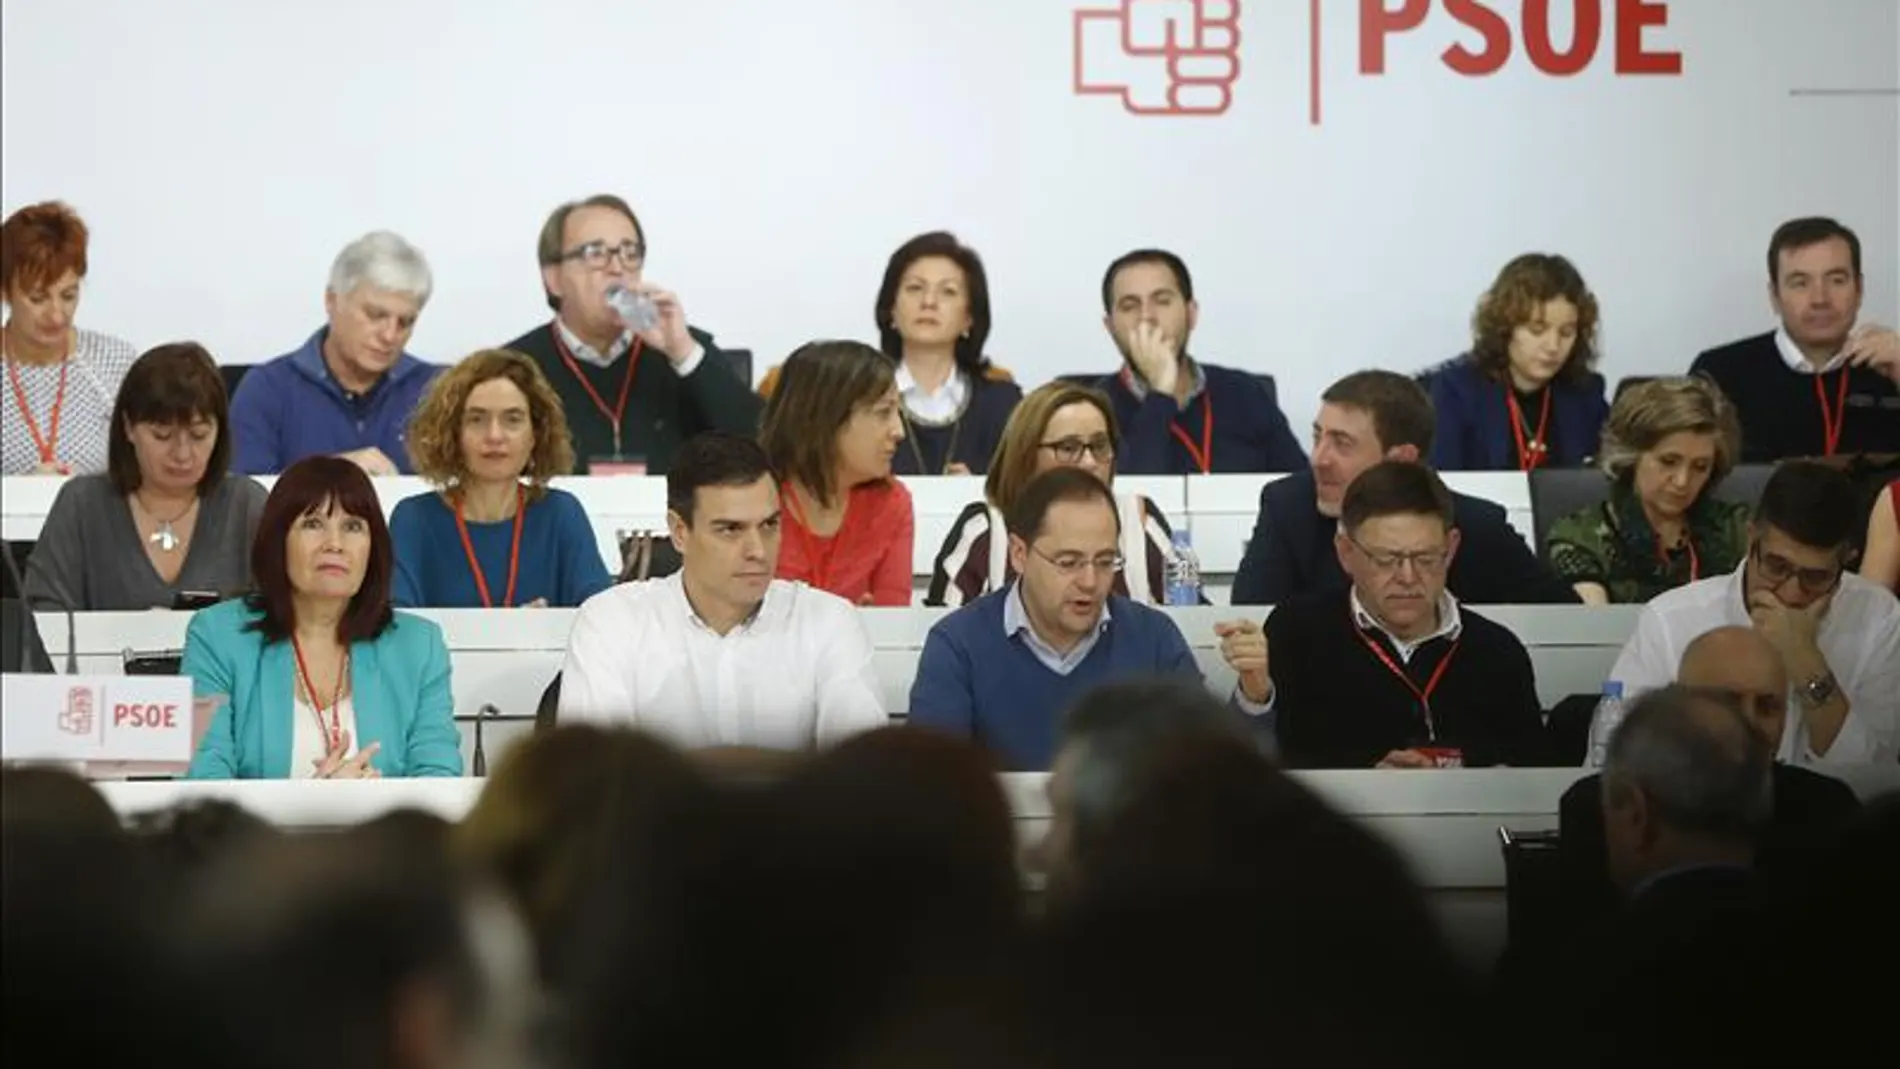 Pedro Sánchez, sobre la oferta de Podemos: "El cambio no es de personas sino de políticas, por eso no vamos a hablar de sillones"